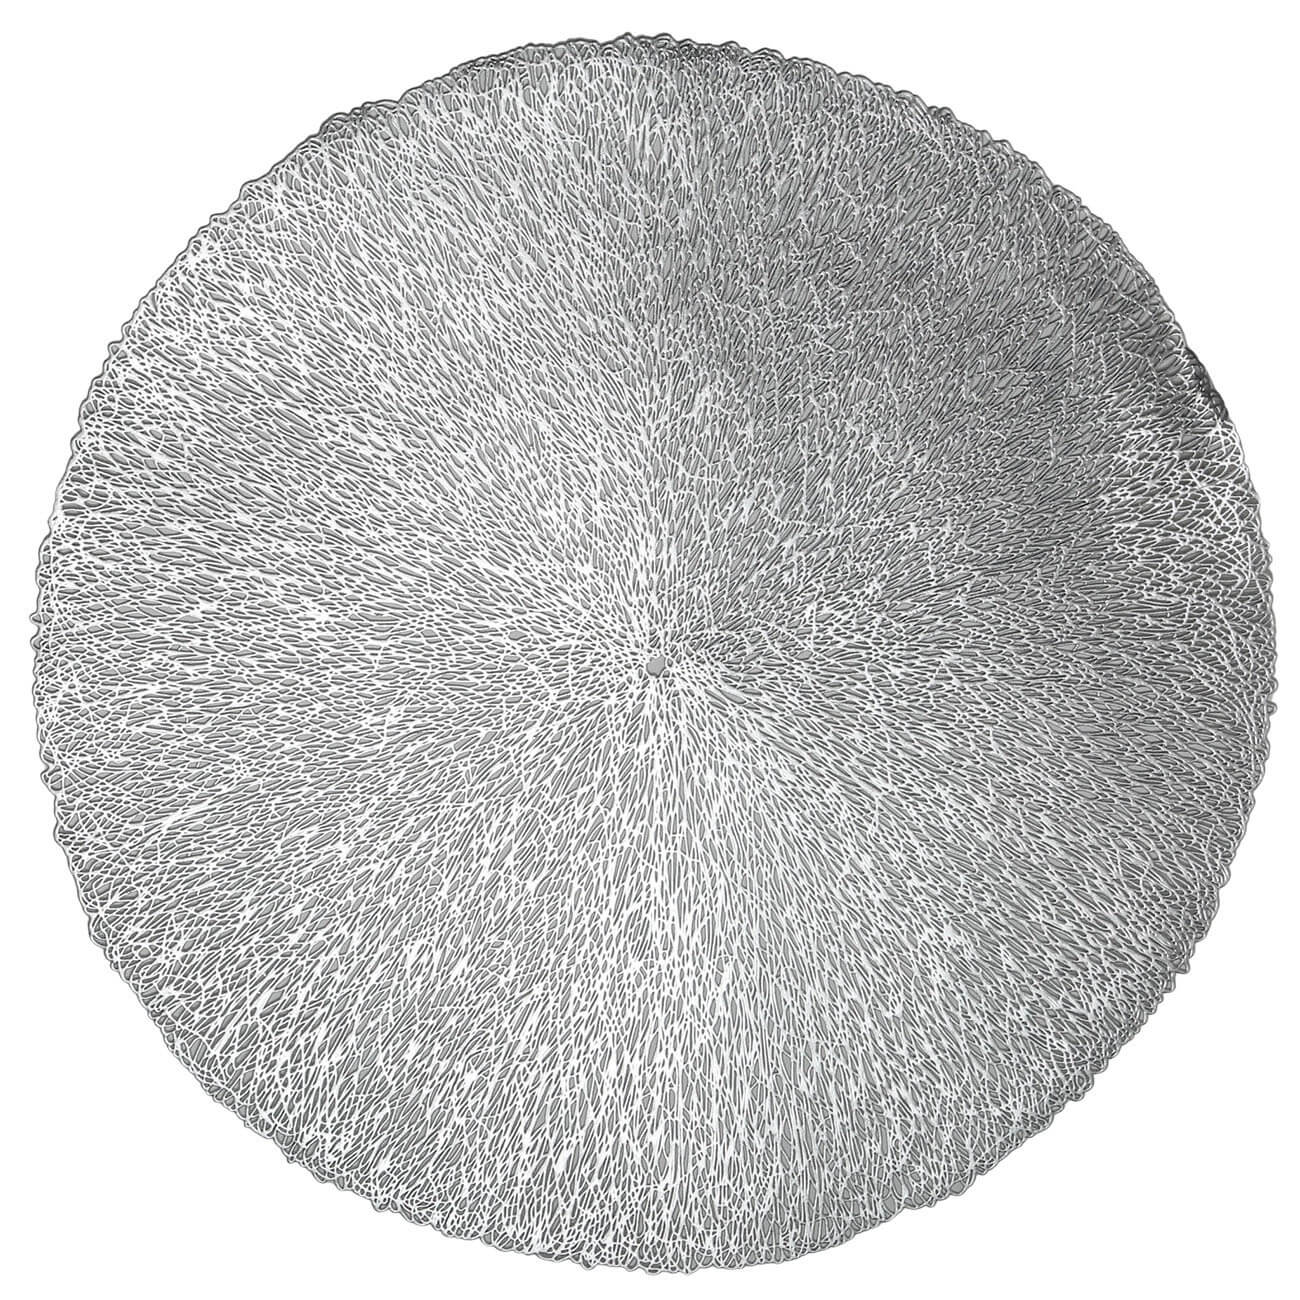 Салфетка под приборы, 38 см, ПВХ, круглая, серебристая, Azhur салфетка микрофибра ladina